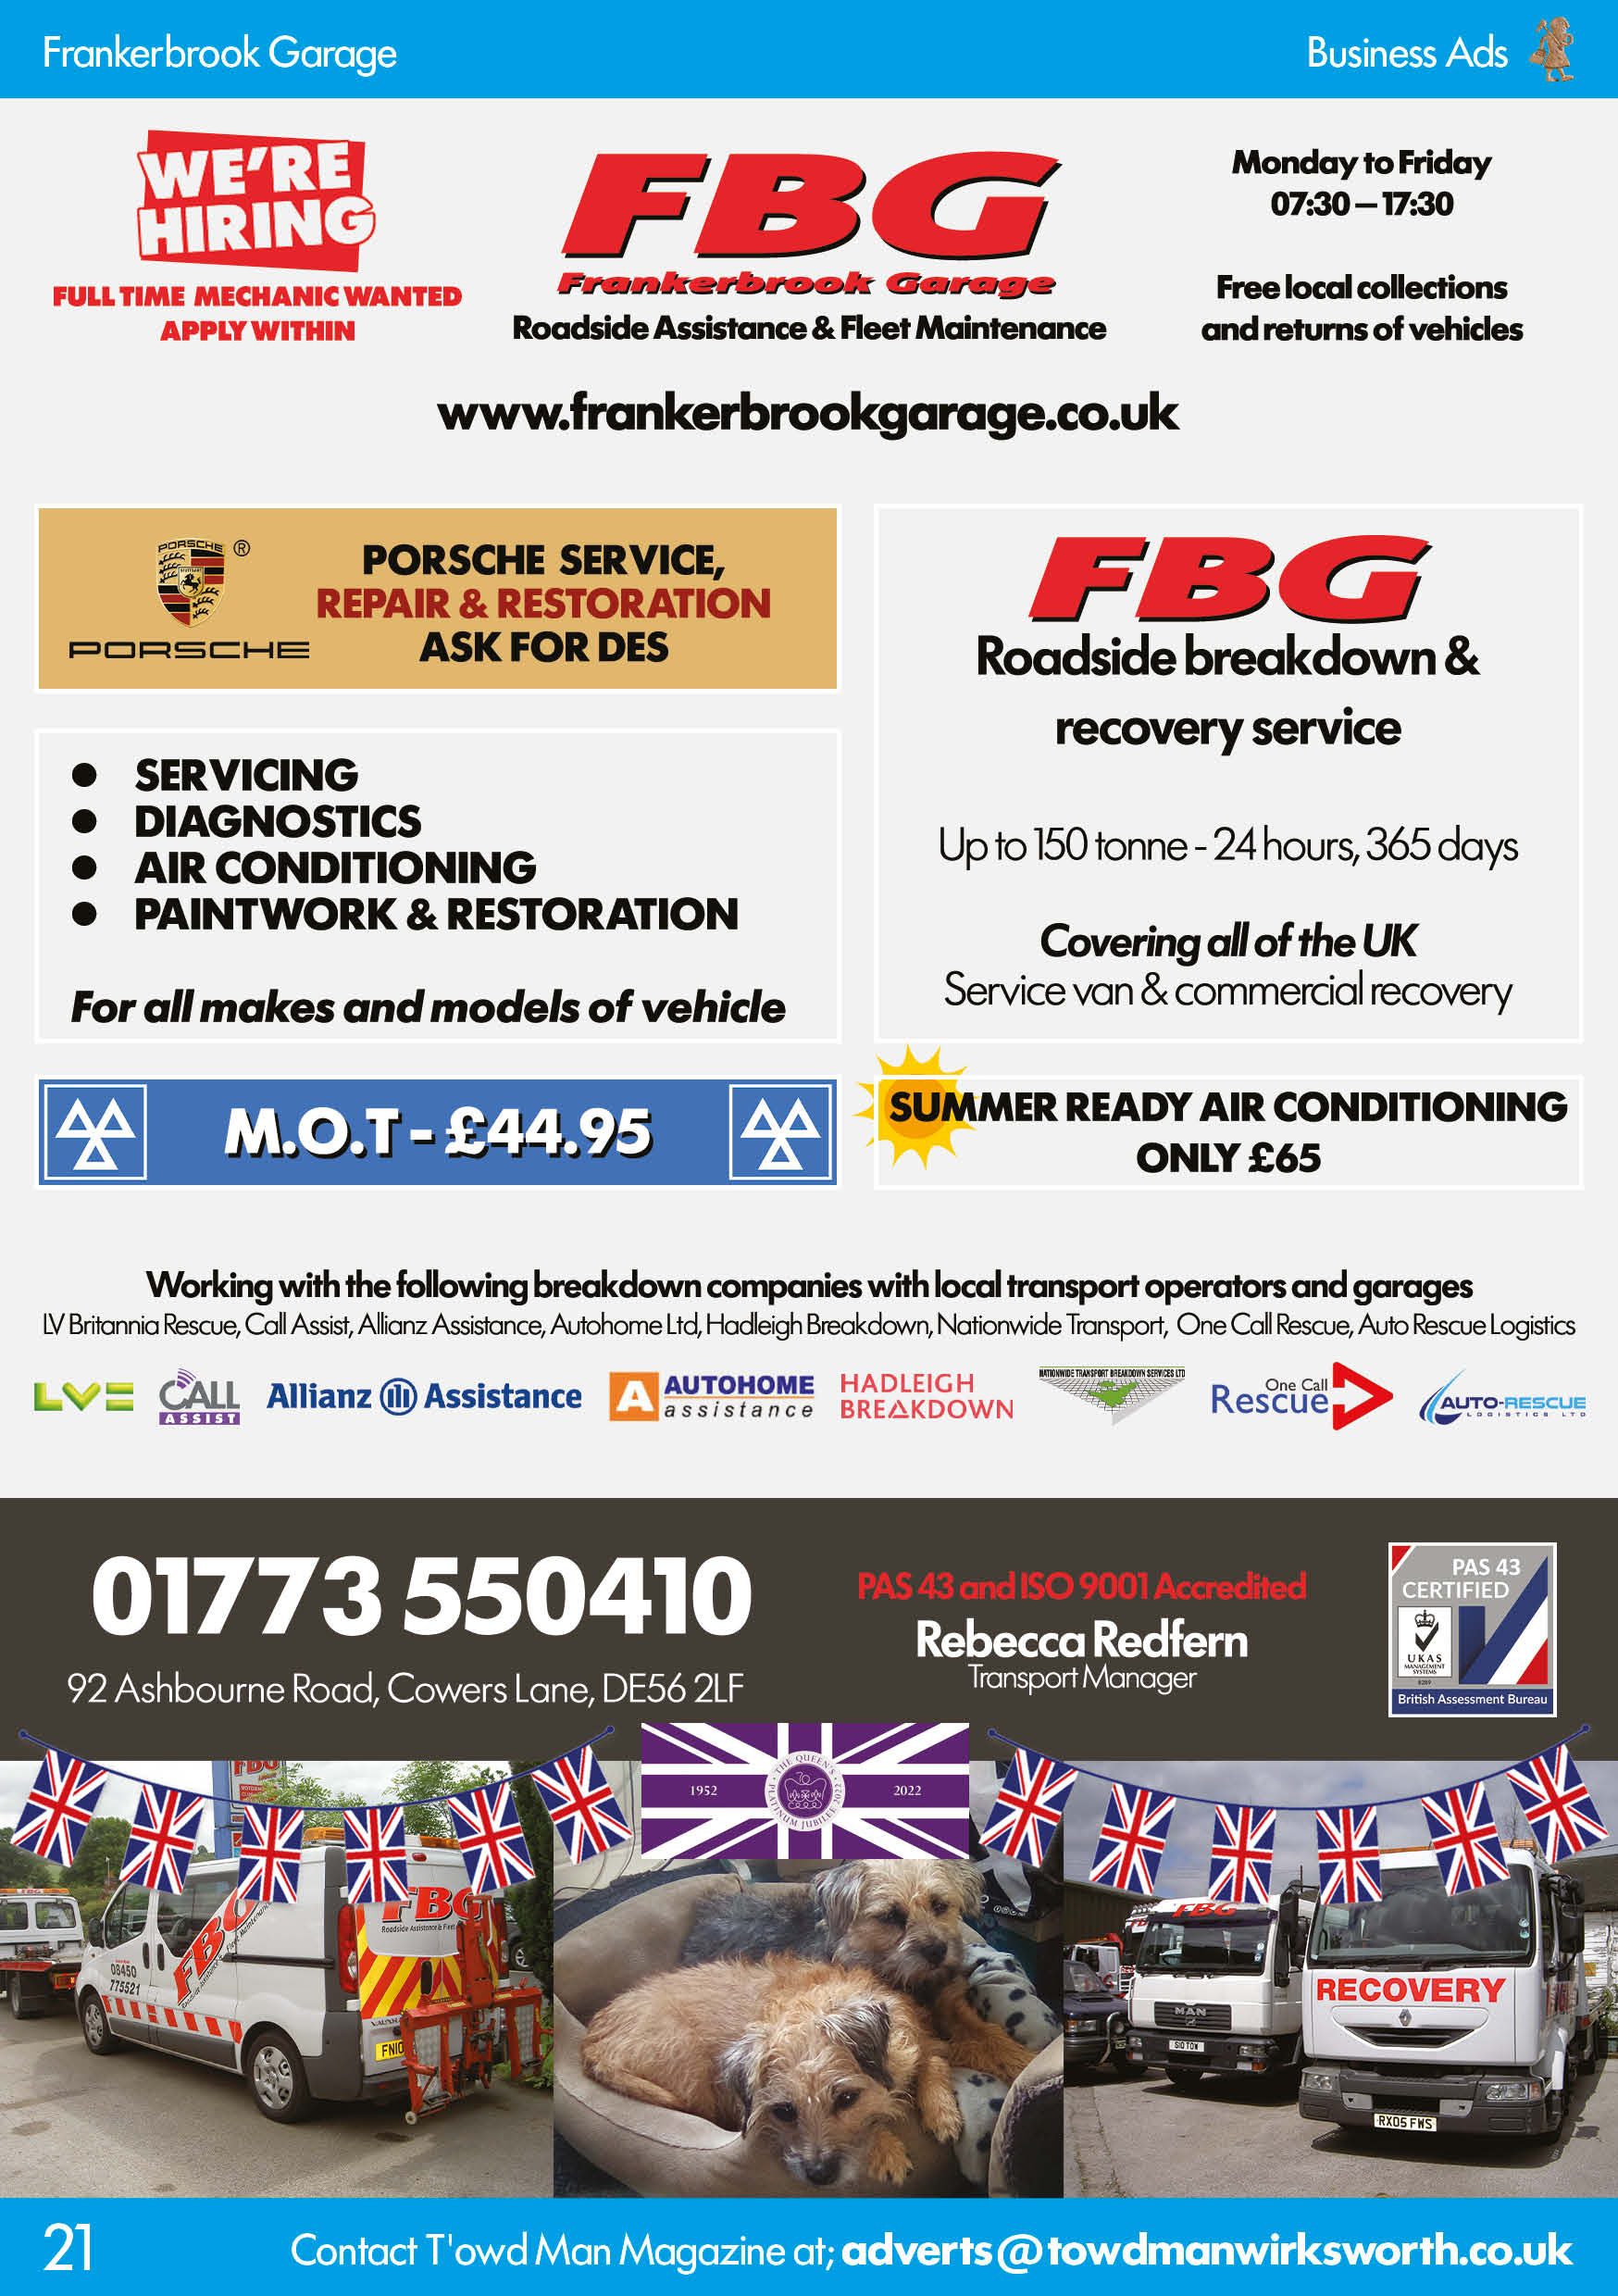 Frankerbrook Garage Ltd